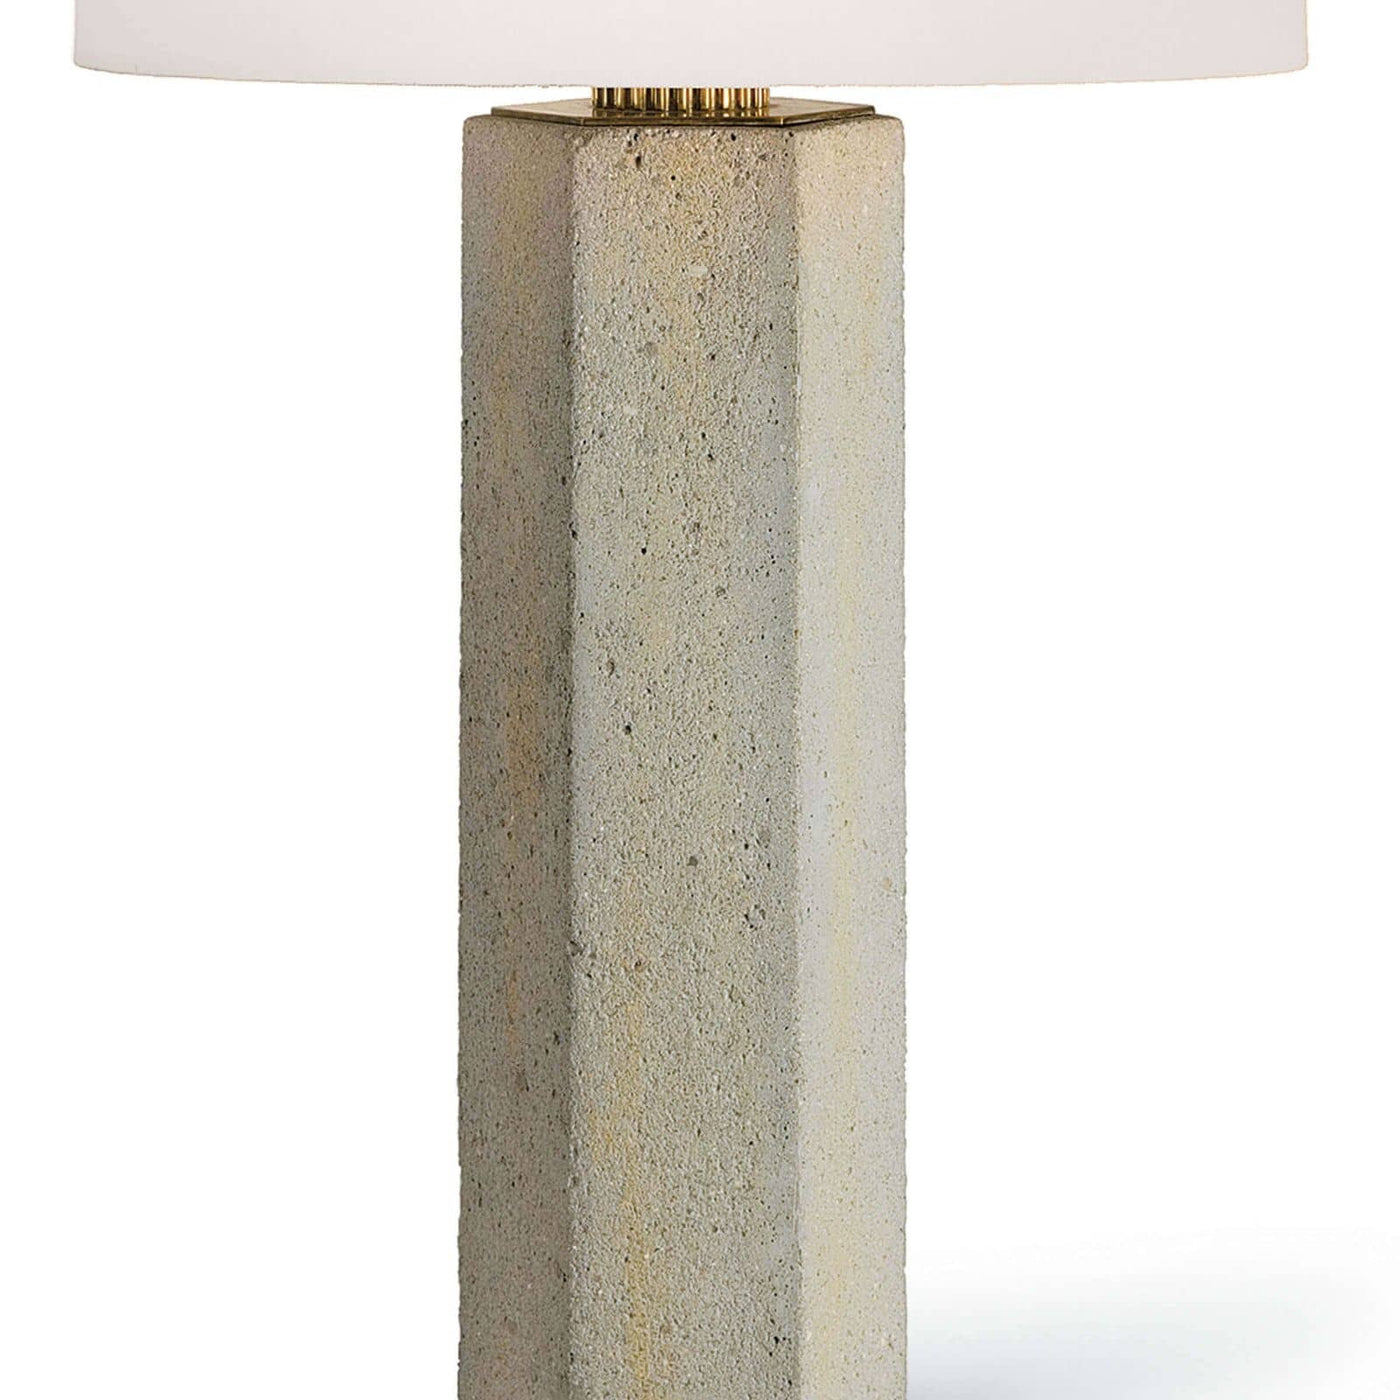 TABLE LAMP HEXAGON COLUMN CONCRETE